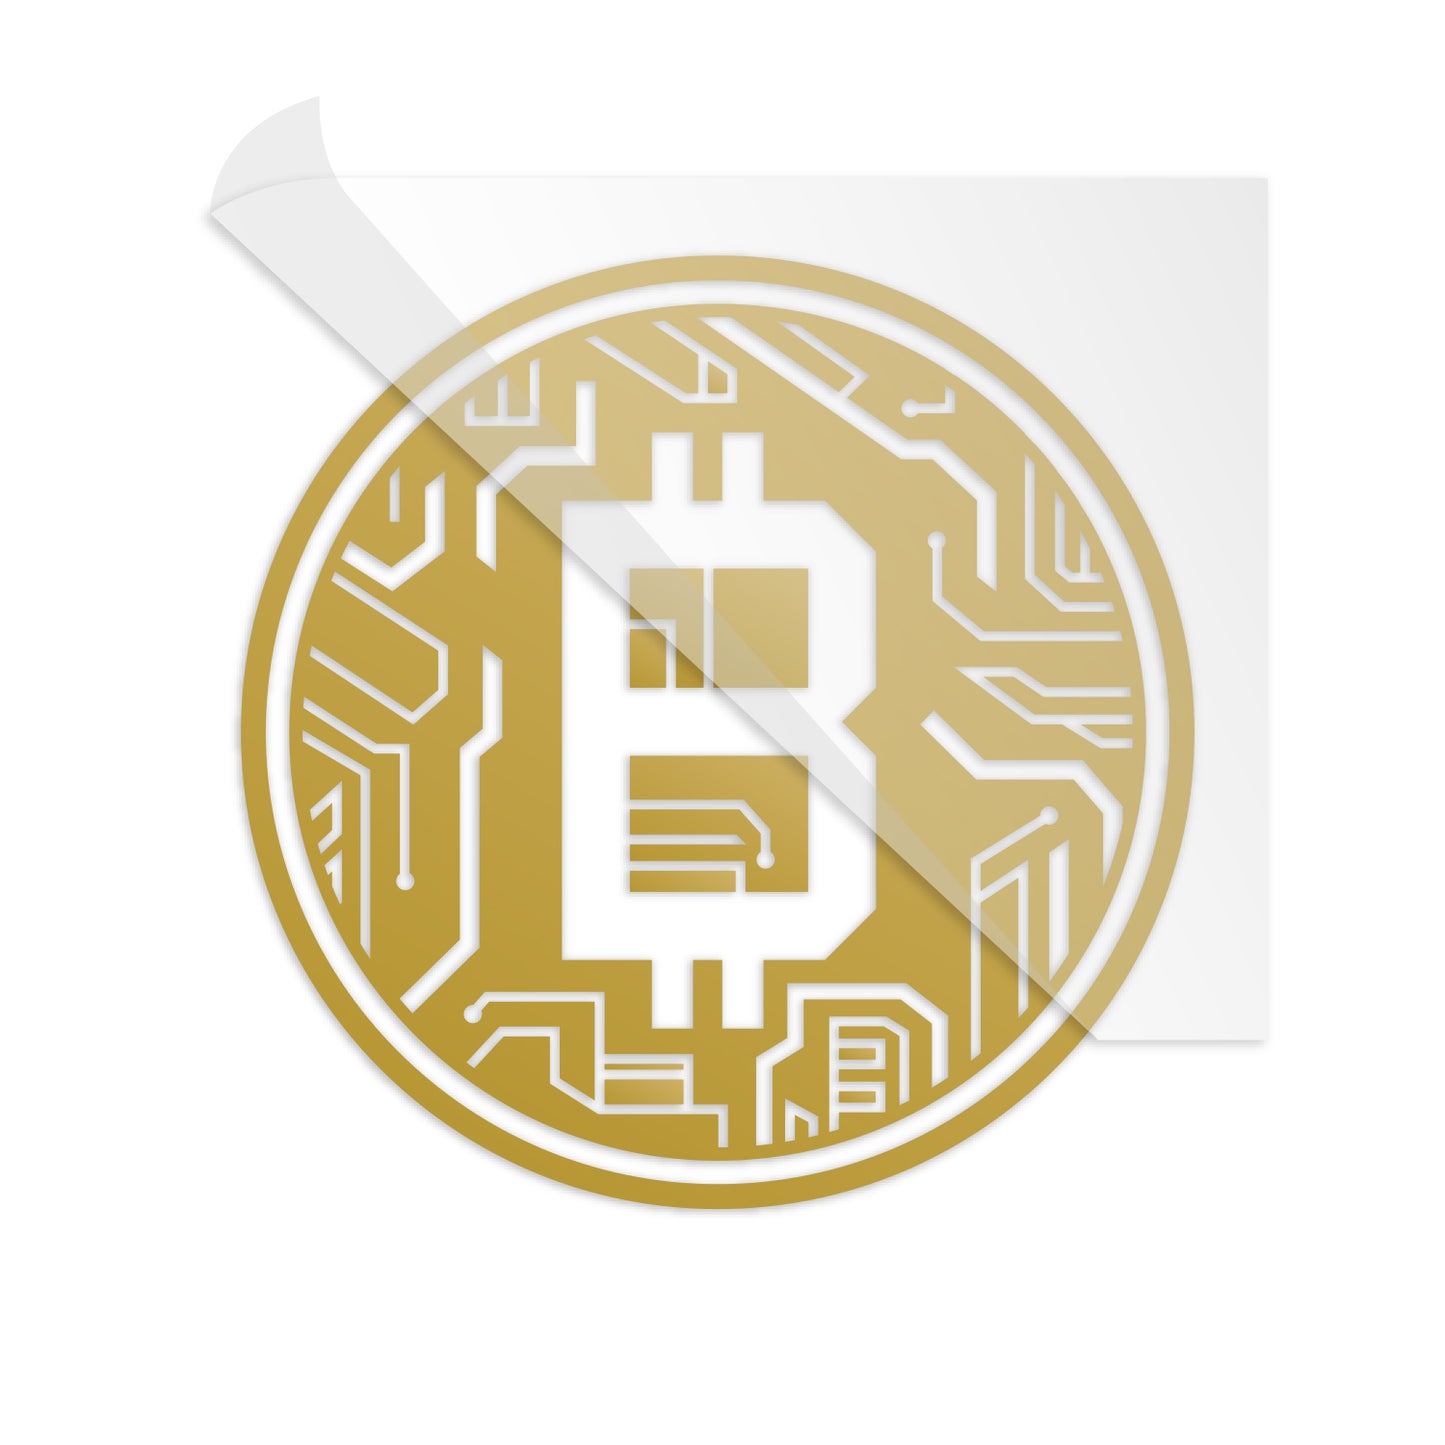 Bitcoin Crypto Circuit Coin Decal